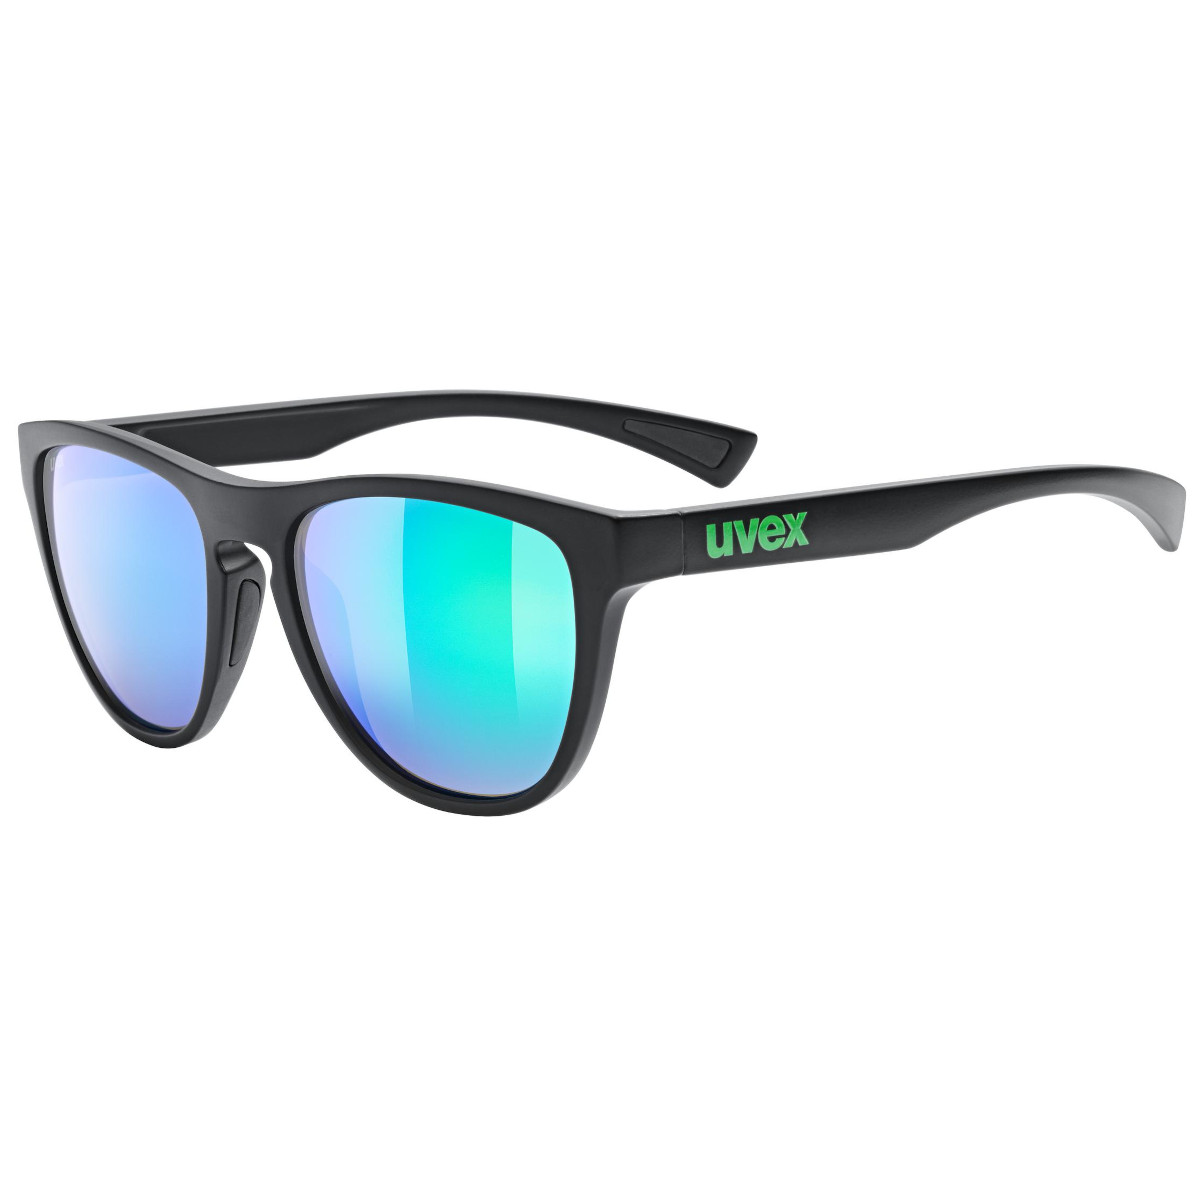 Produktbild von Uvex esntl spirit Brille - black matt/mirror green